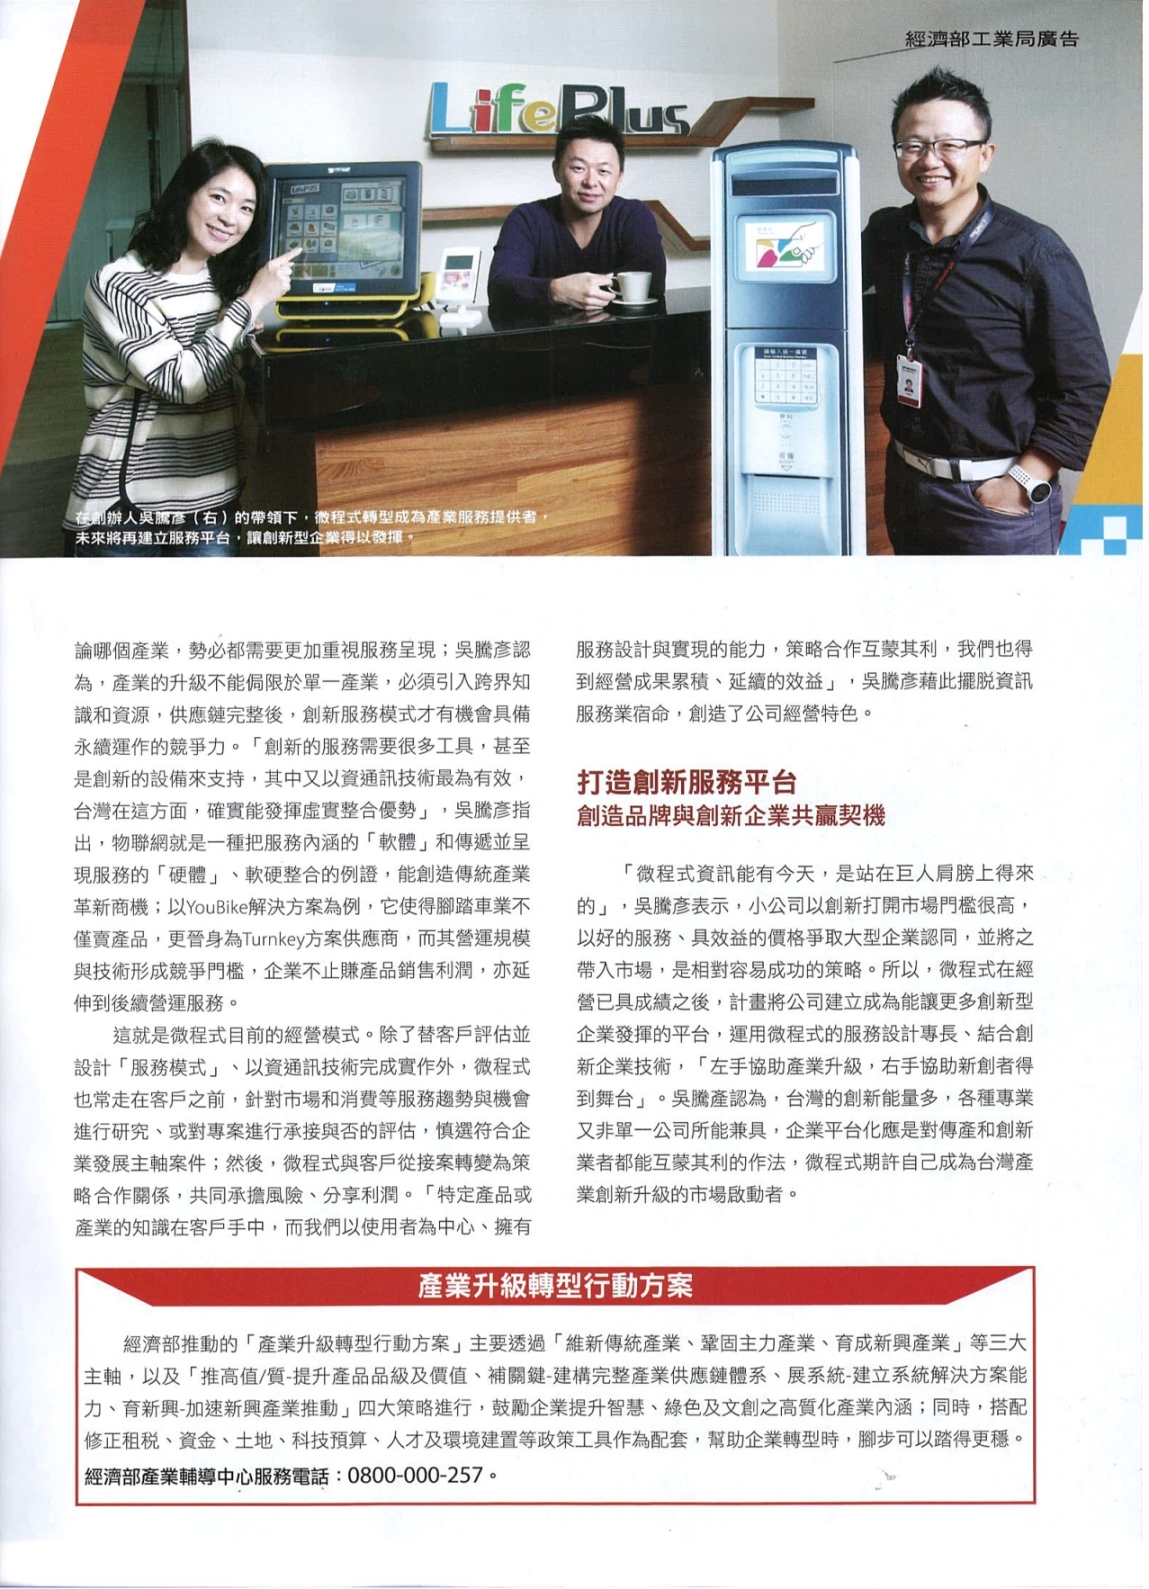 微程式總經理吳騰彥打造服務平台創造共贏